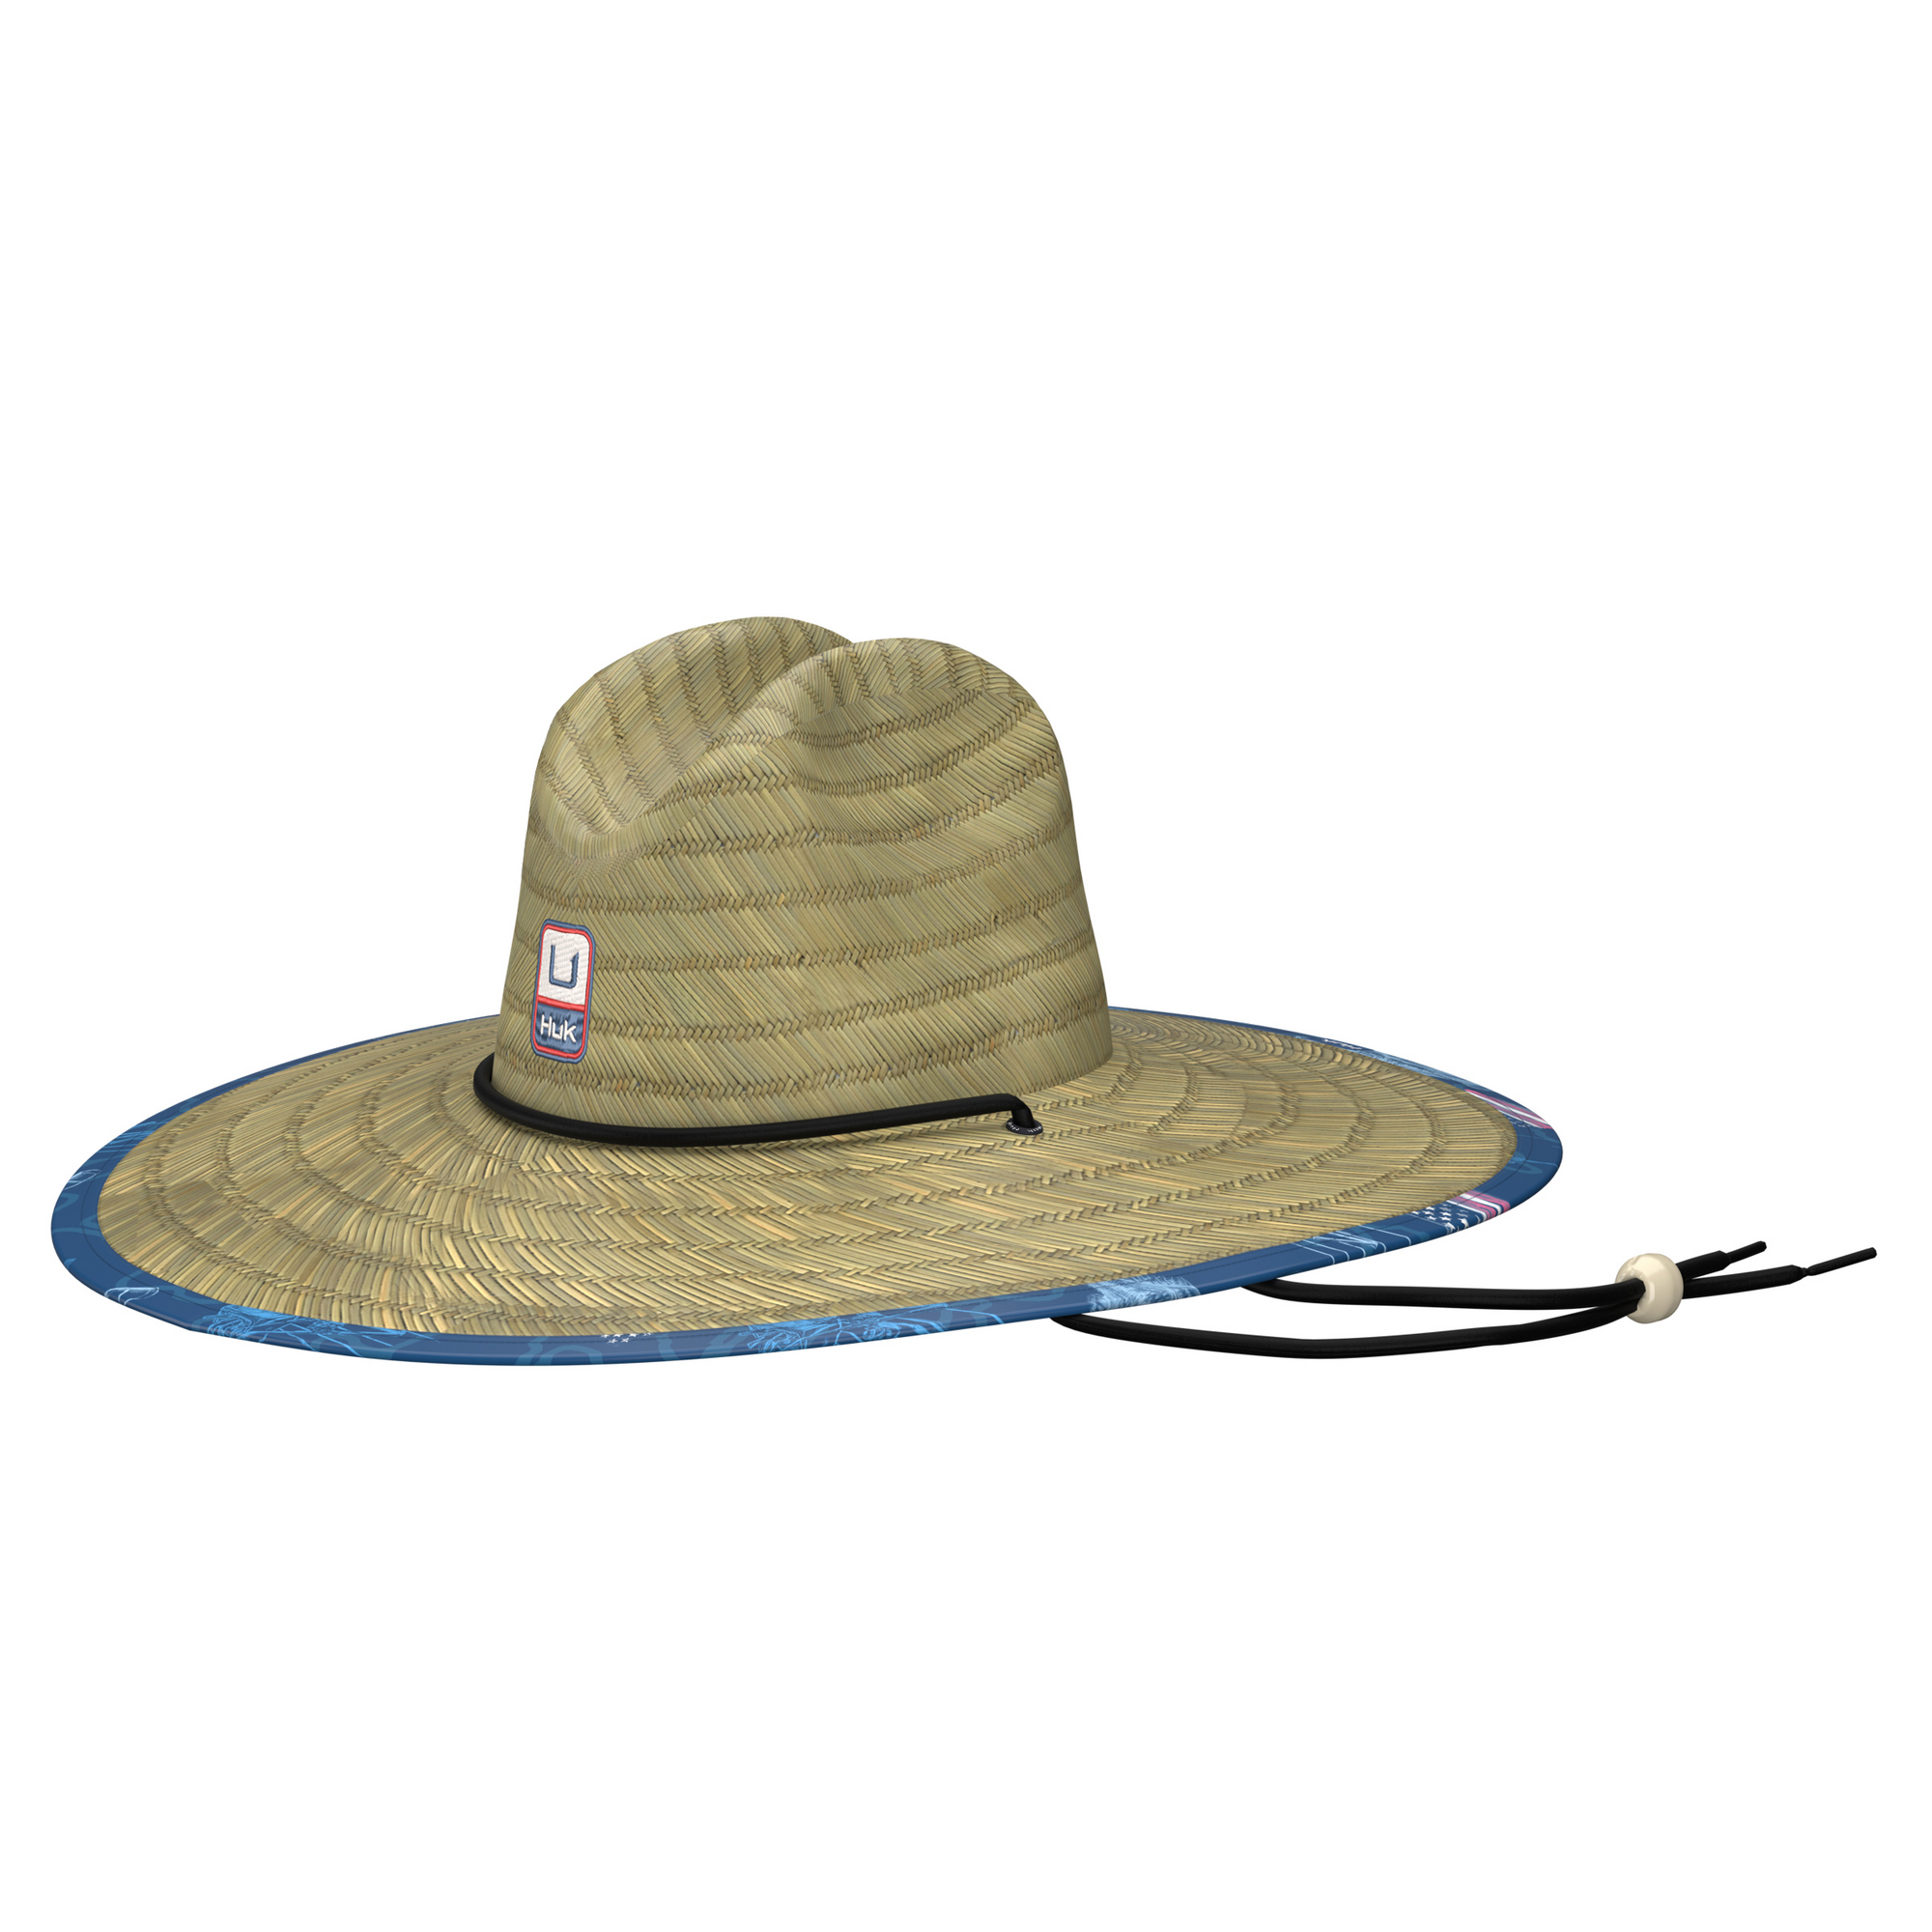  HUK Women's Standard Straw Wide Brim Fishing Hat, Tall